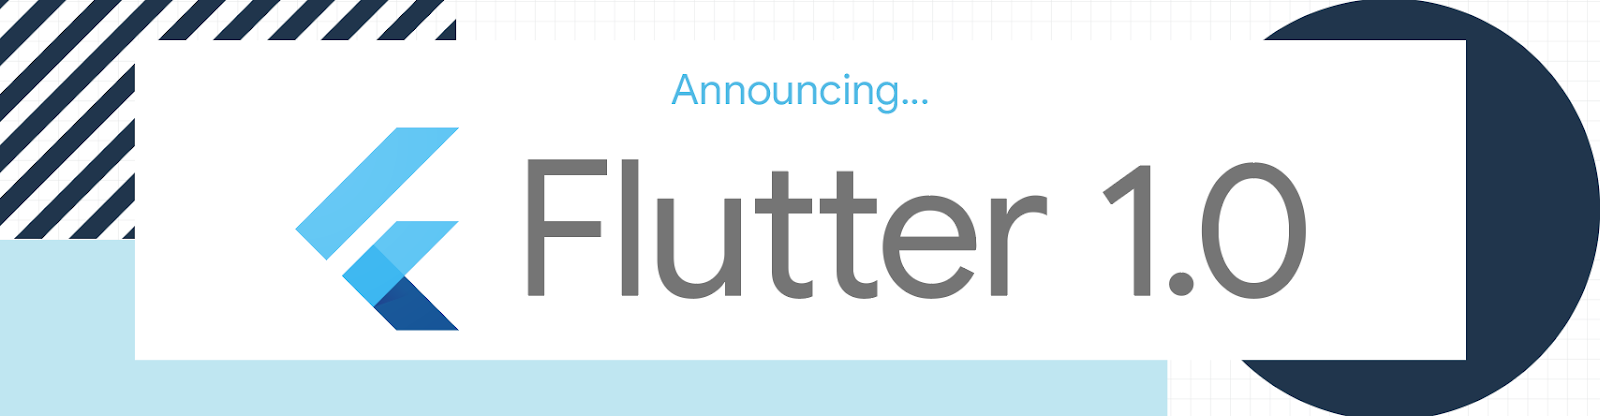 Flutter 1.0 Mga Pagpapalabas ng Palabas ay Seryoso ang Google Tungkol sa Project Fuchsia